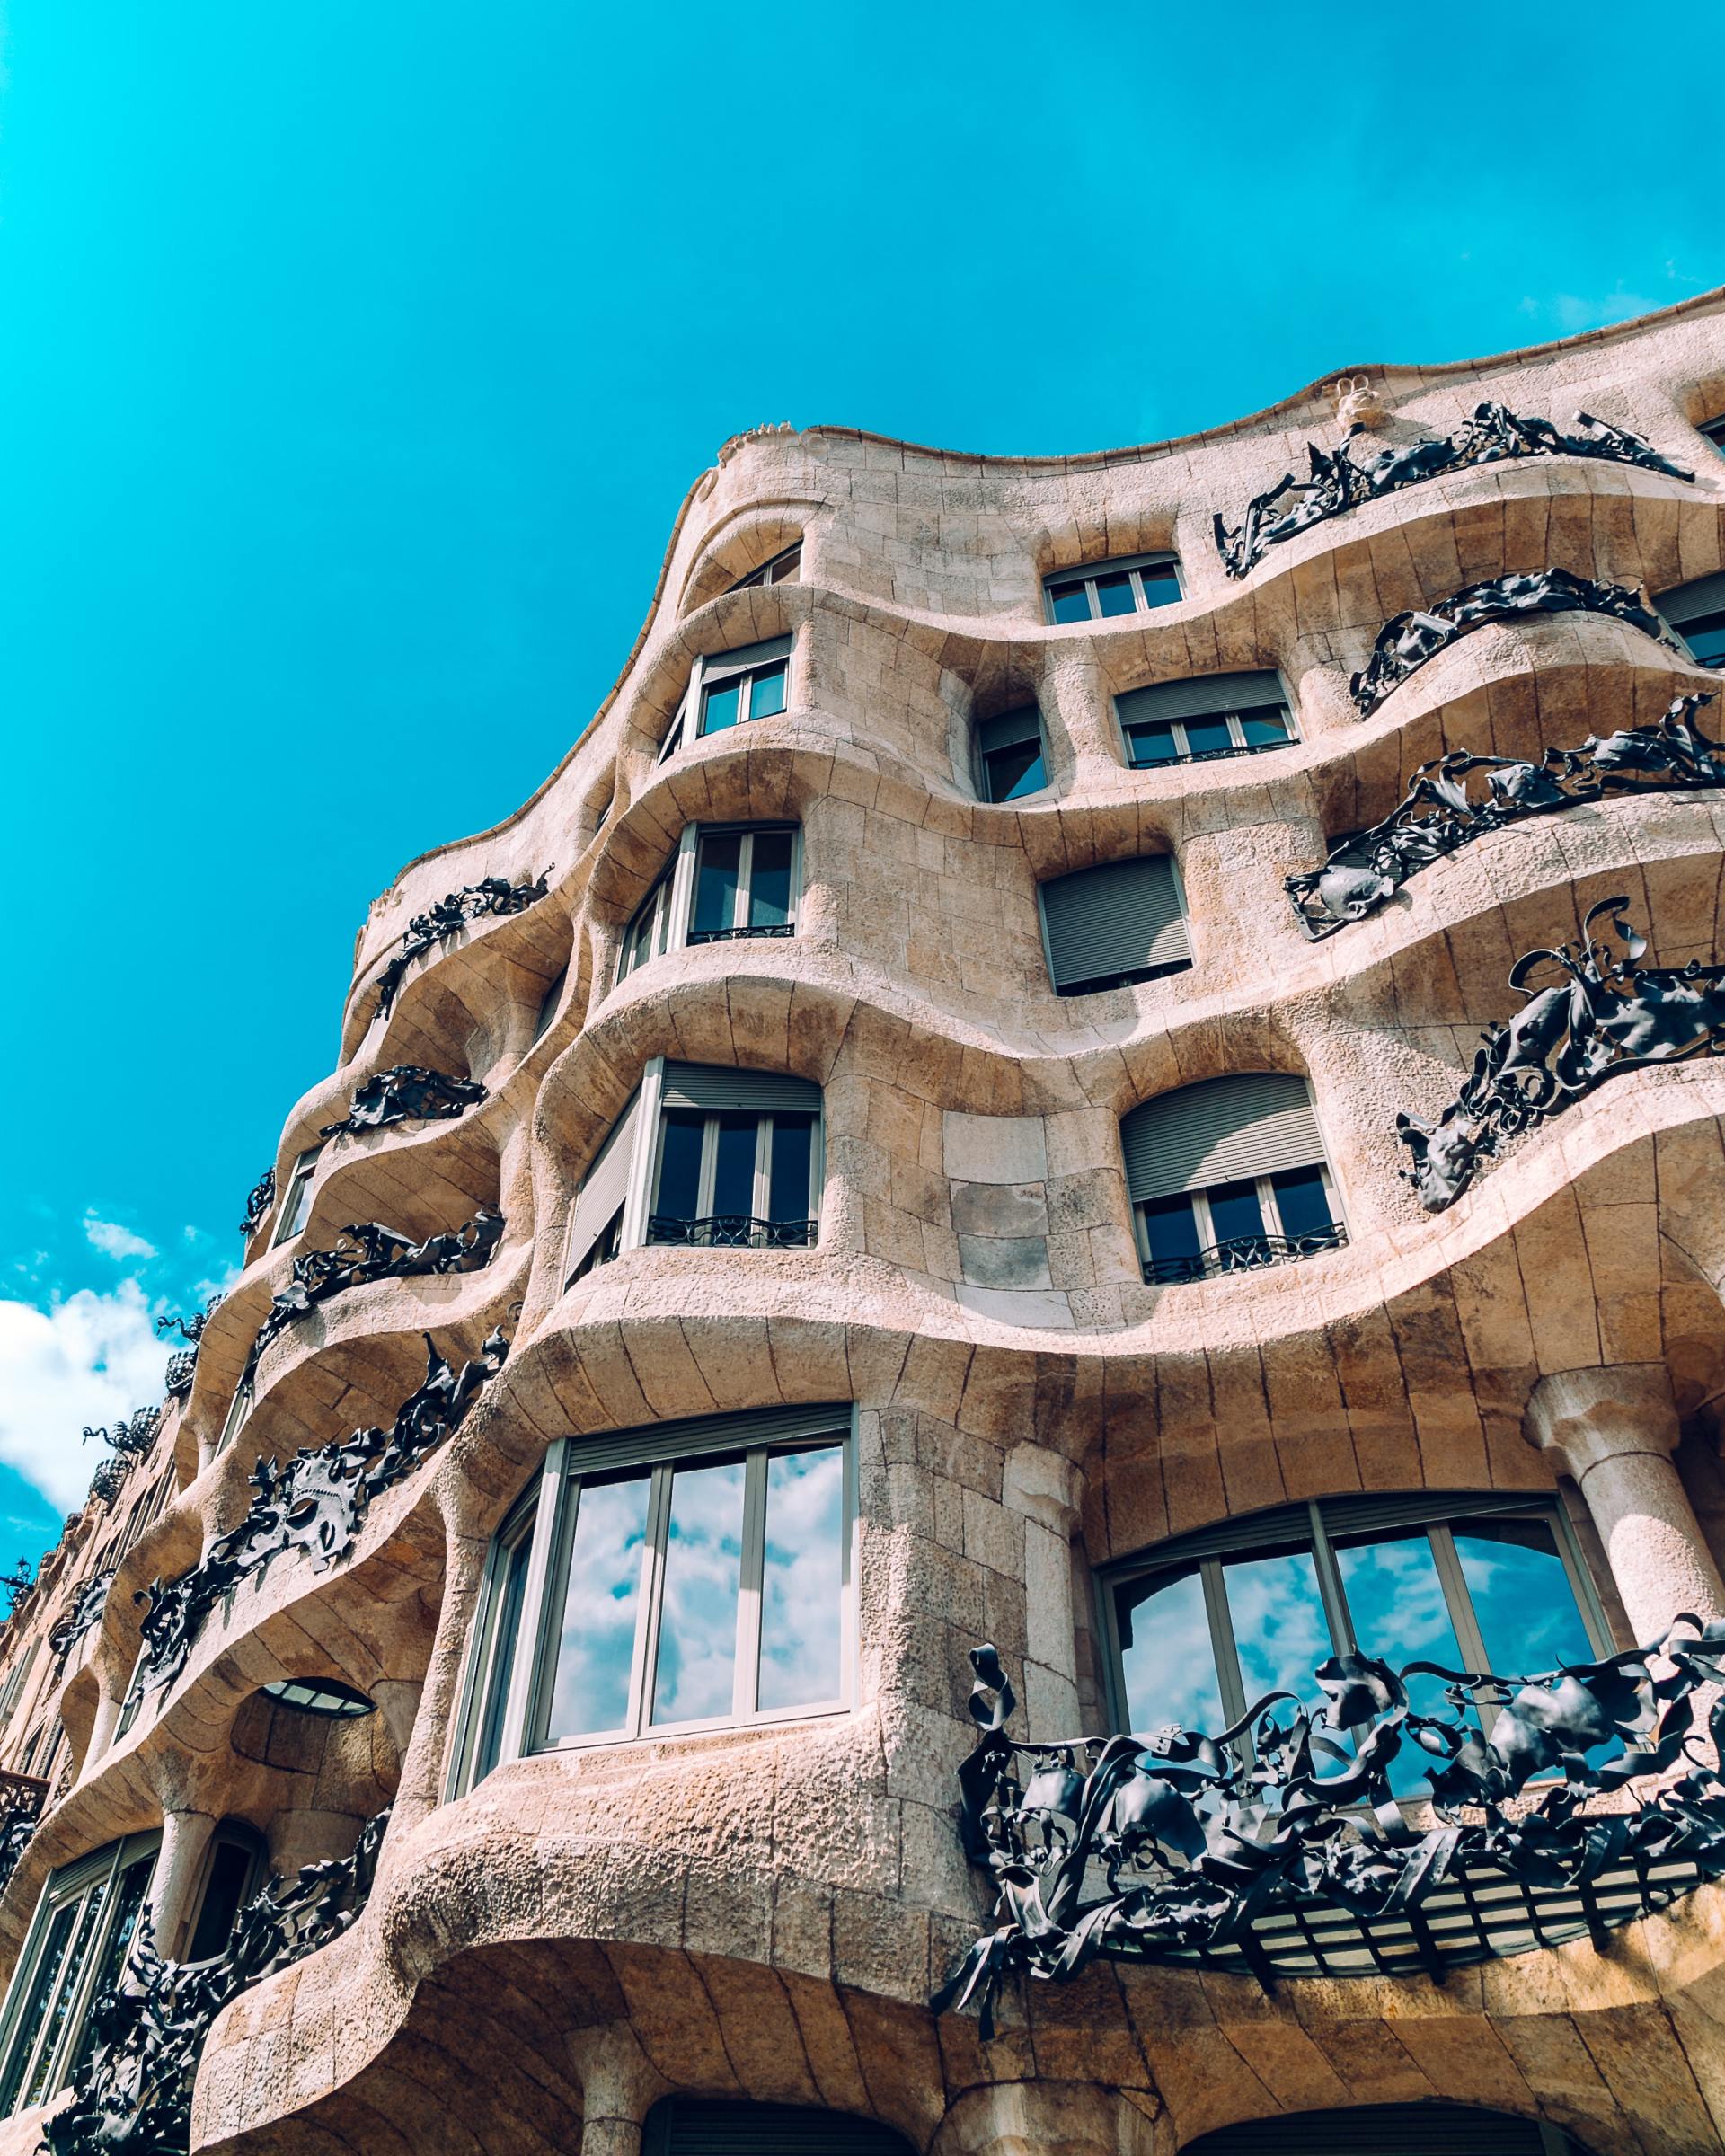 Fassade eines Gaudihauses in Barcelona, Schulfoto